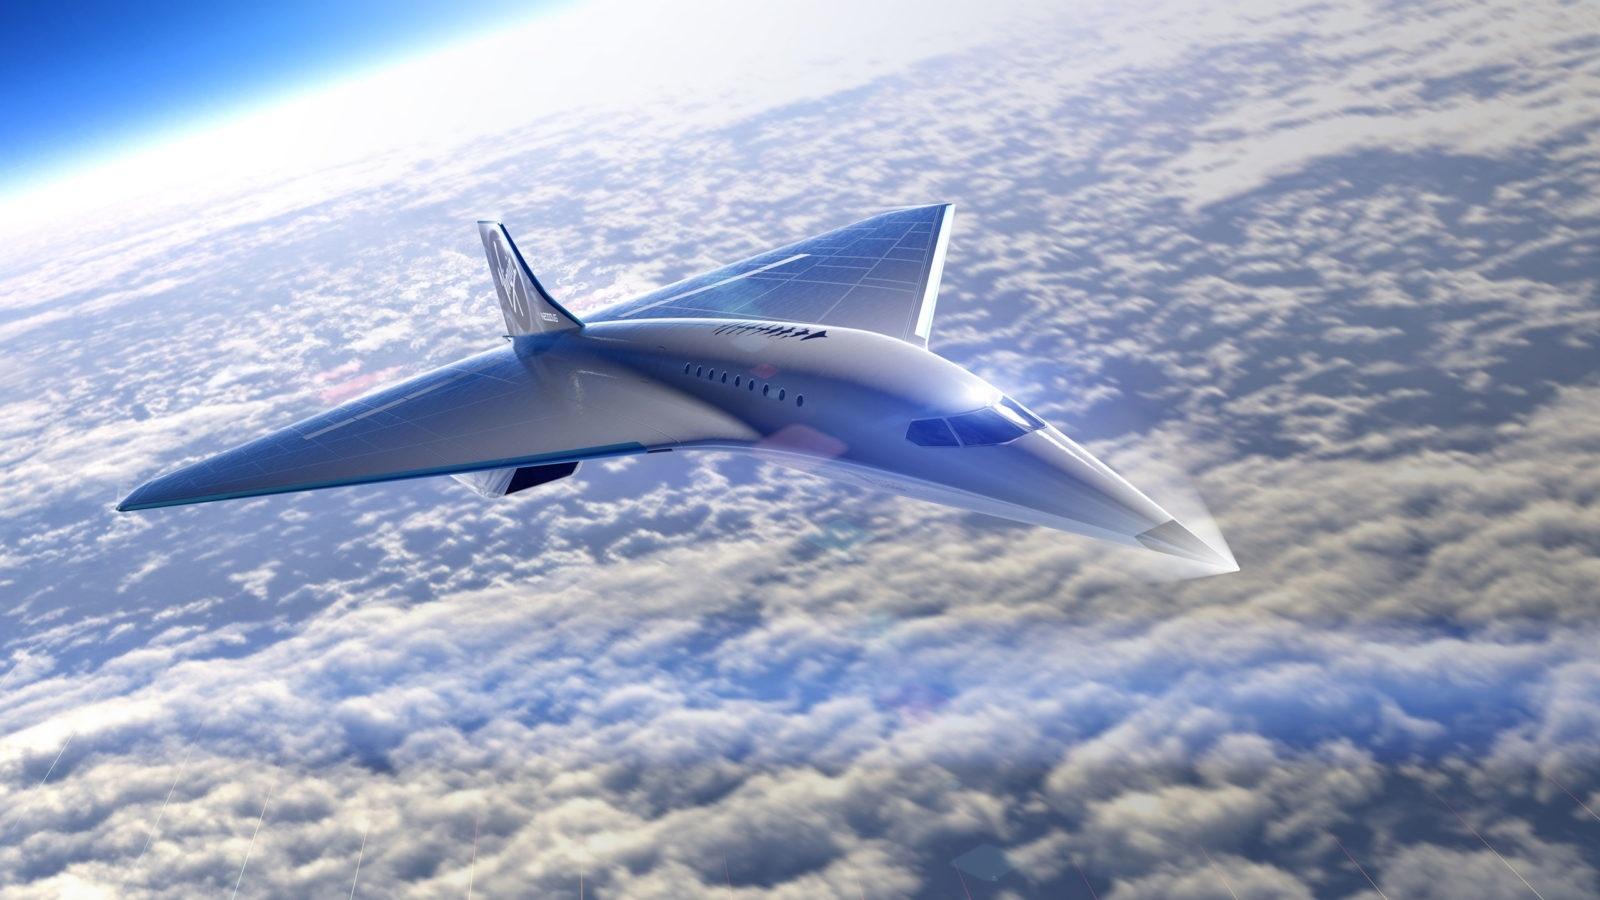 Projeto de supersônico promete voar a 3.700 km/h e fazer SP-Miami em 1h45 -  04/08/2020 - UOL Economia